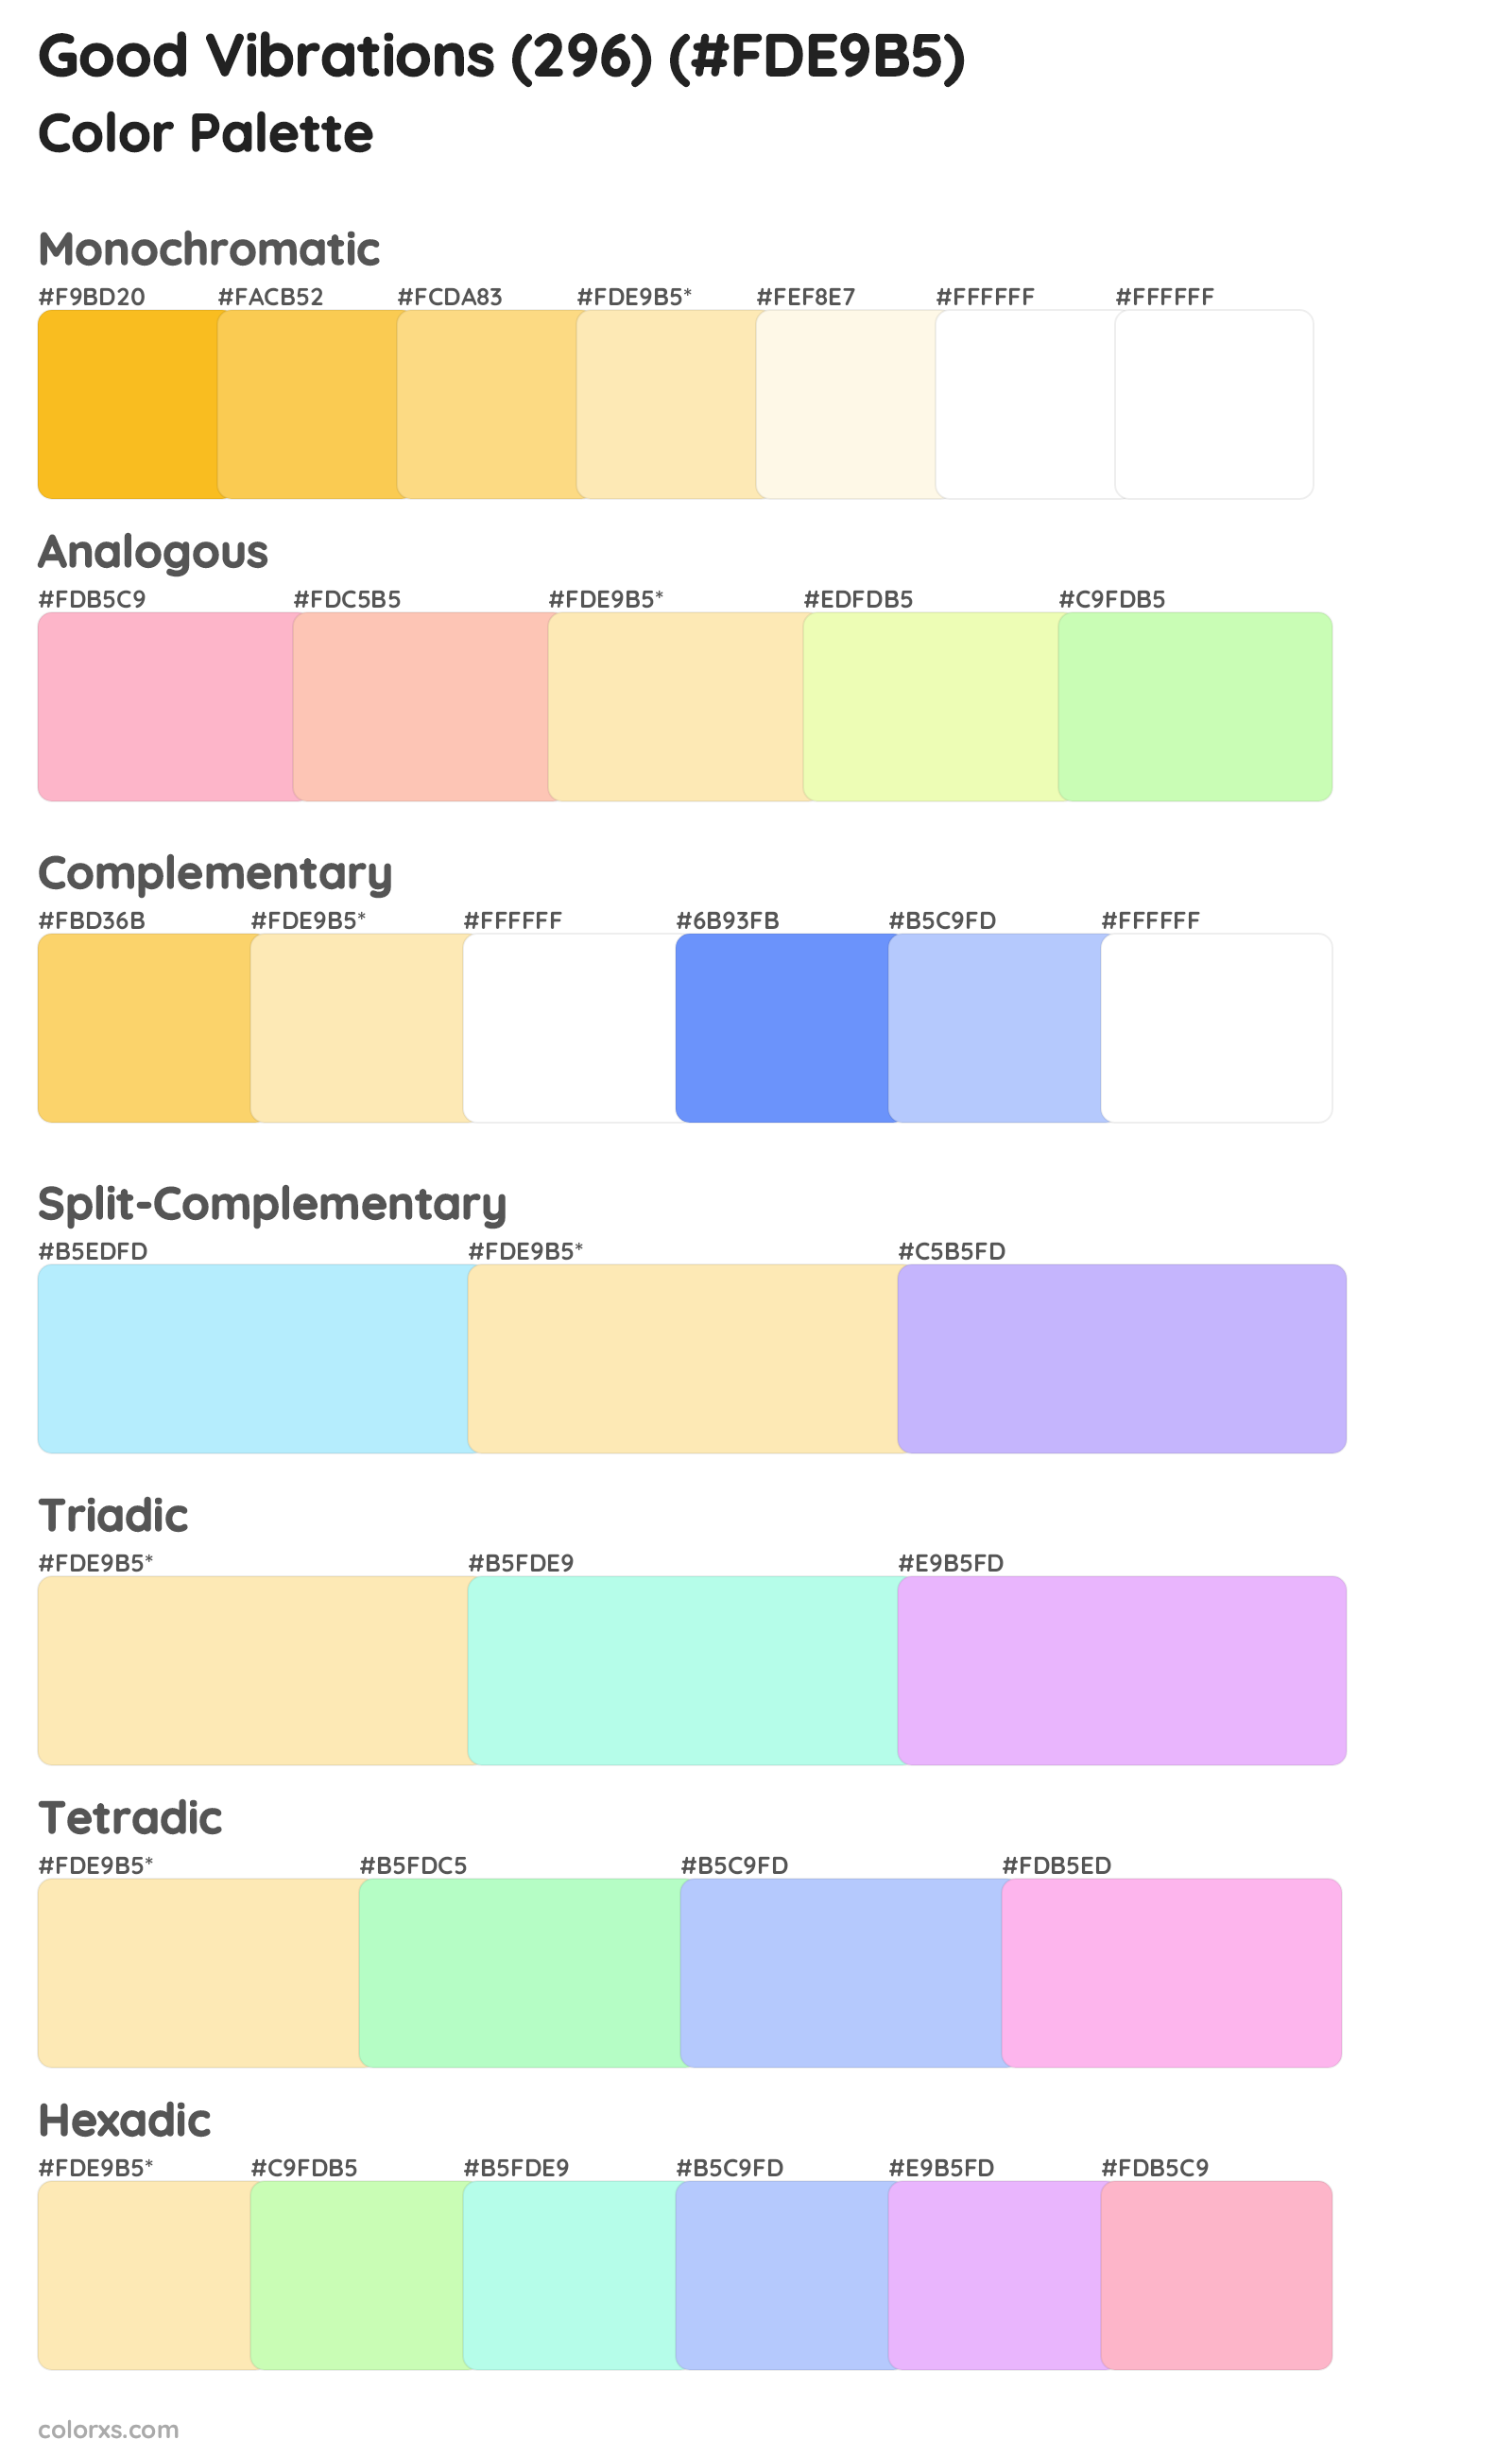 Good Vibrations (296) Color Scheme Palettes